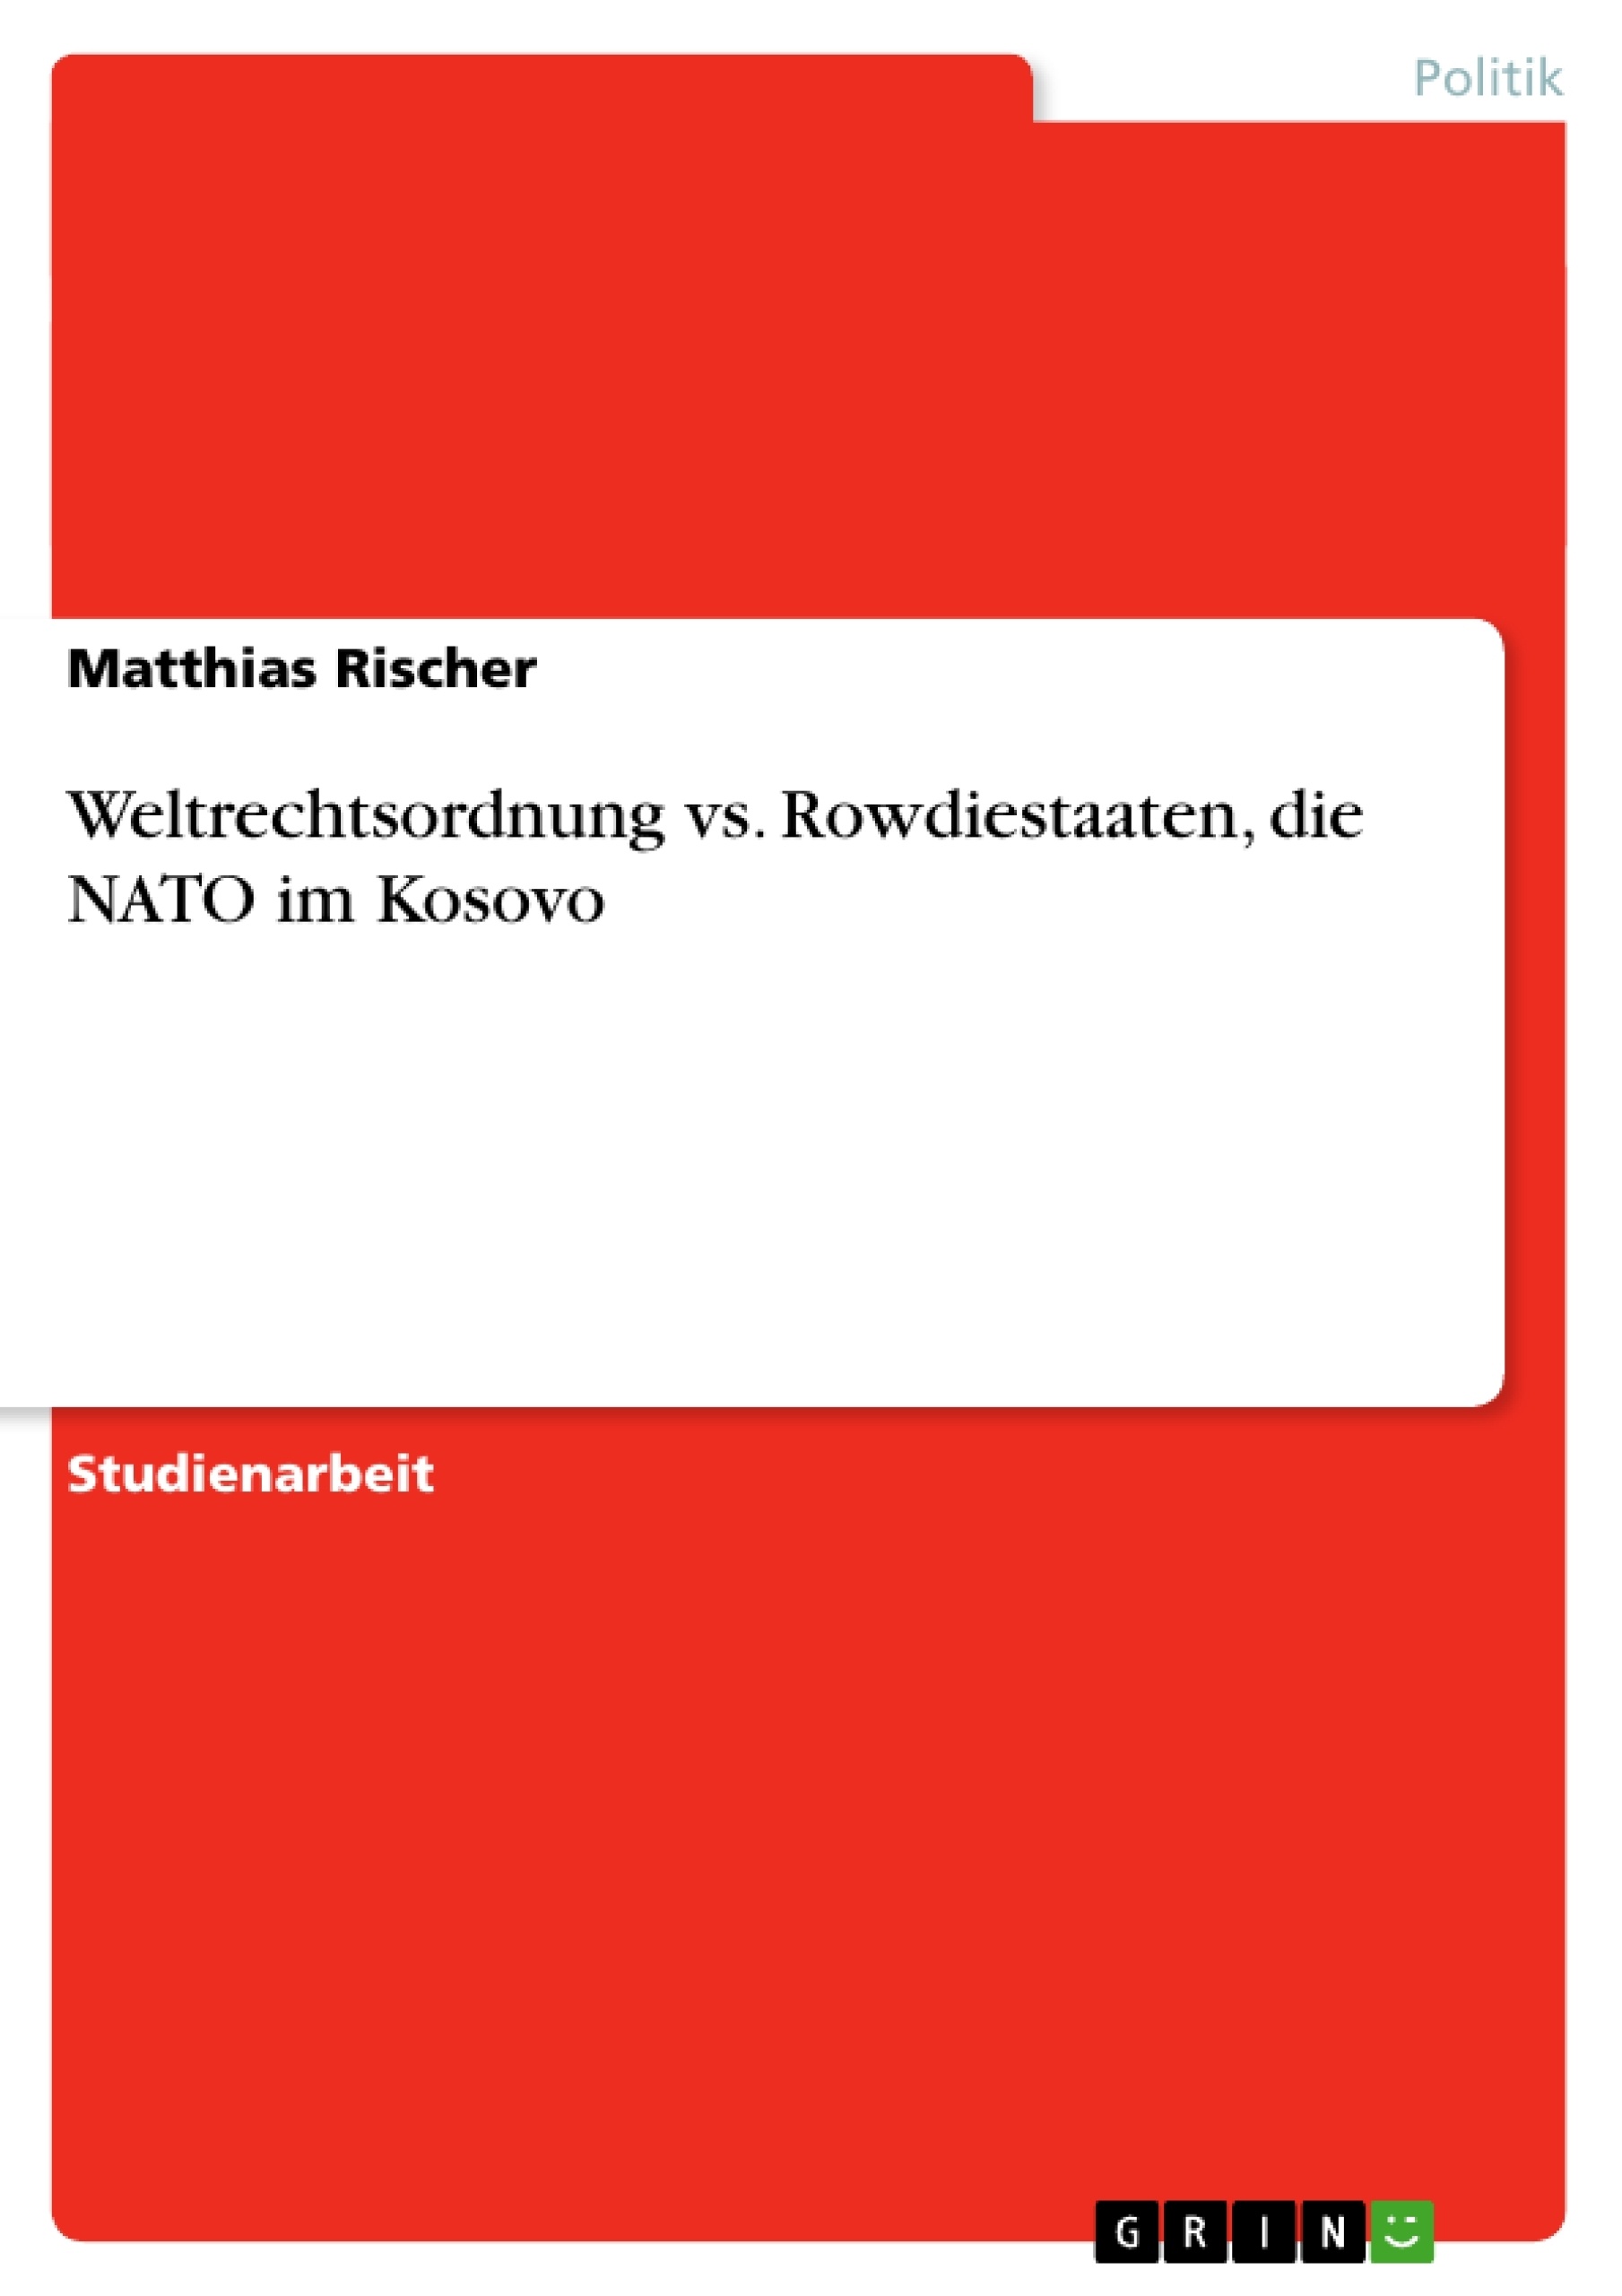 Título: Weltrechtsordnung vs. Rowdiestaaten, die NATO im Kosovo